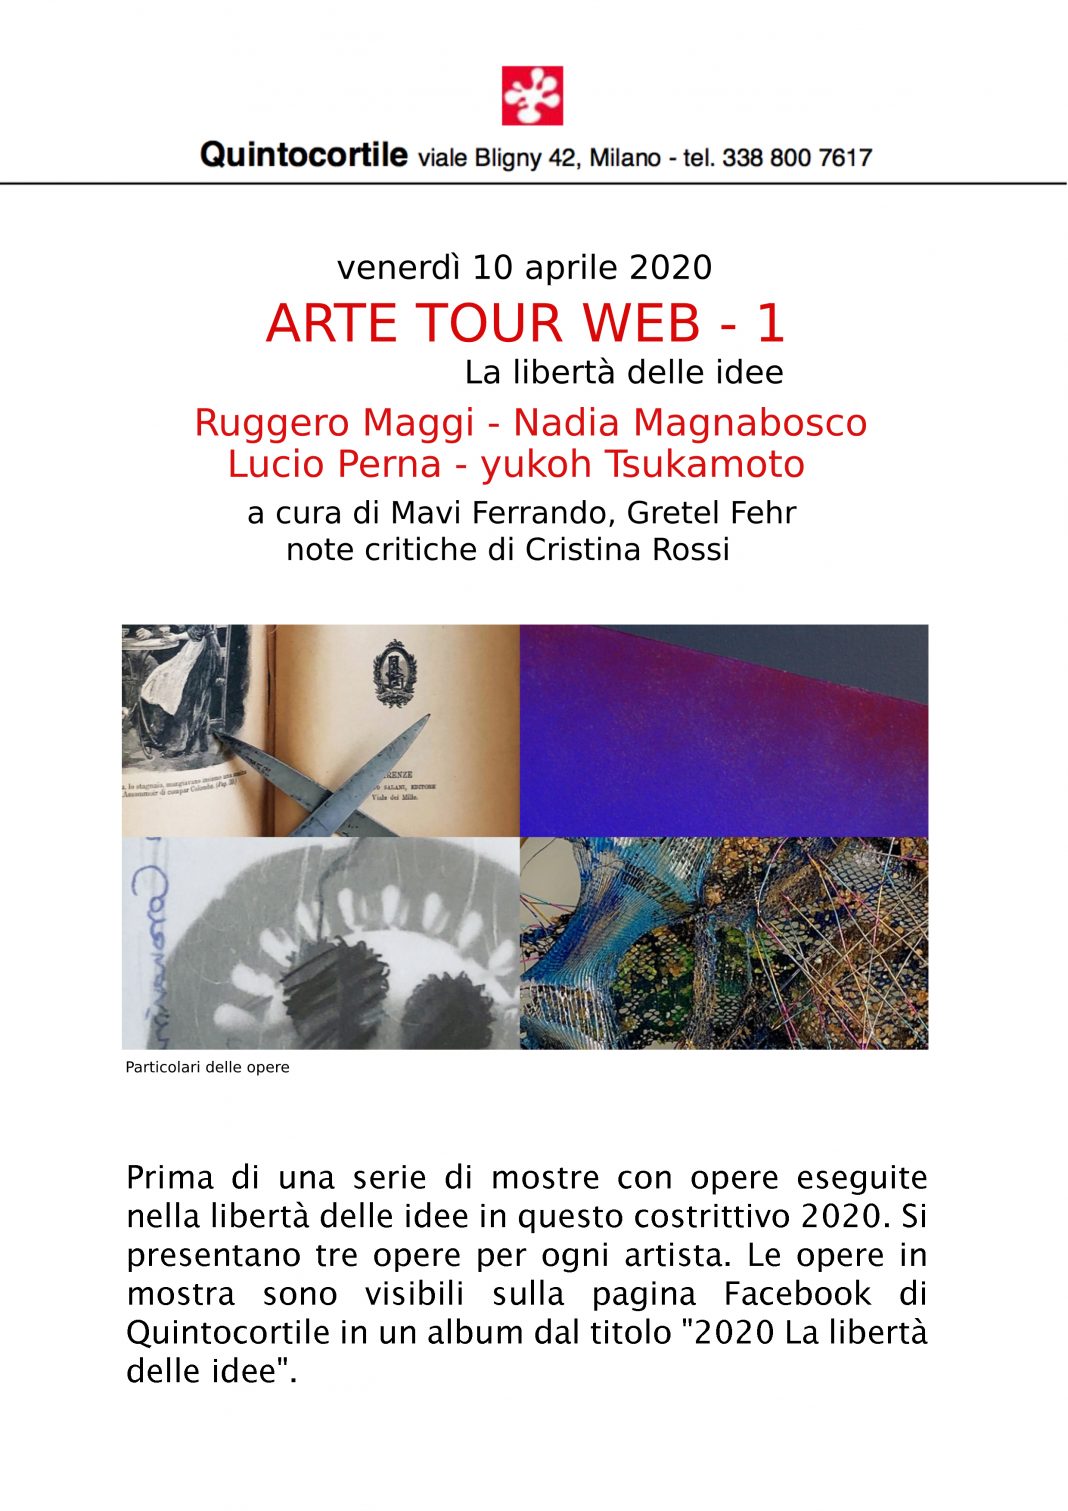 Arte Tour Web #1: La libertà delle idee (evento online)https://www.exibart.com/repository/media/formidable/11/Comunicato-stampa.-mostra-virtuale2020jpg-2-1068x1511.jpg